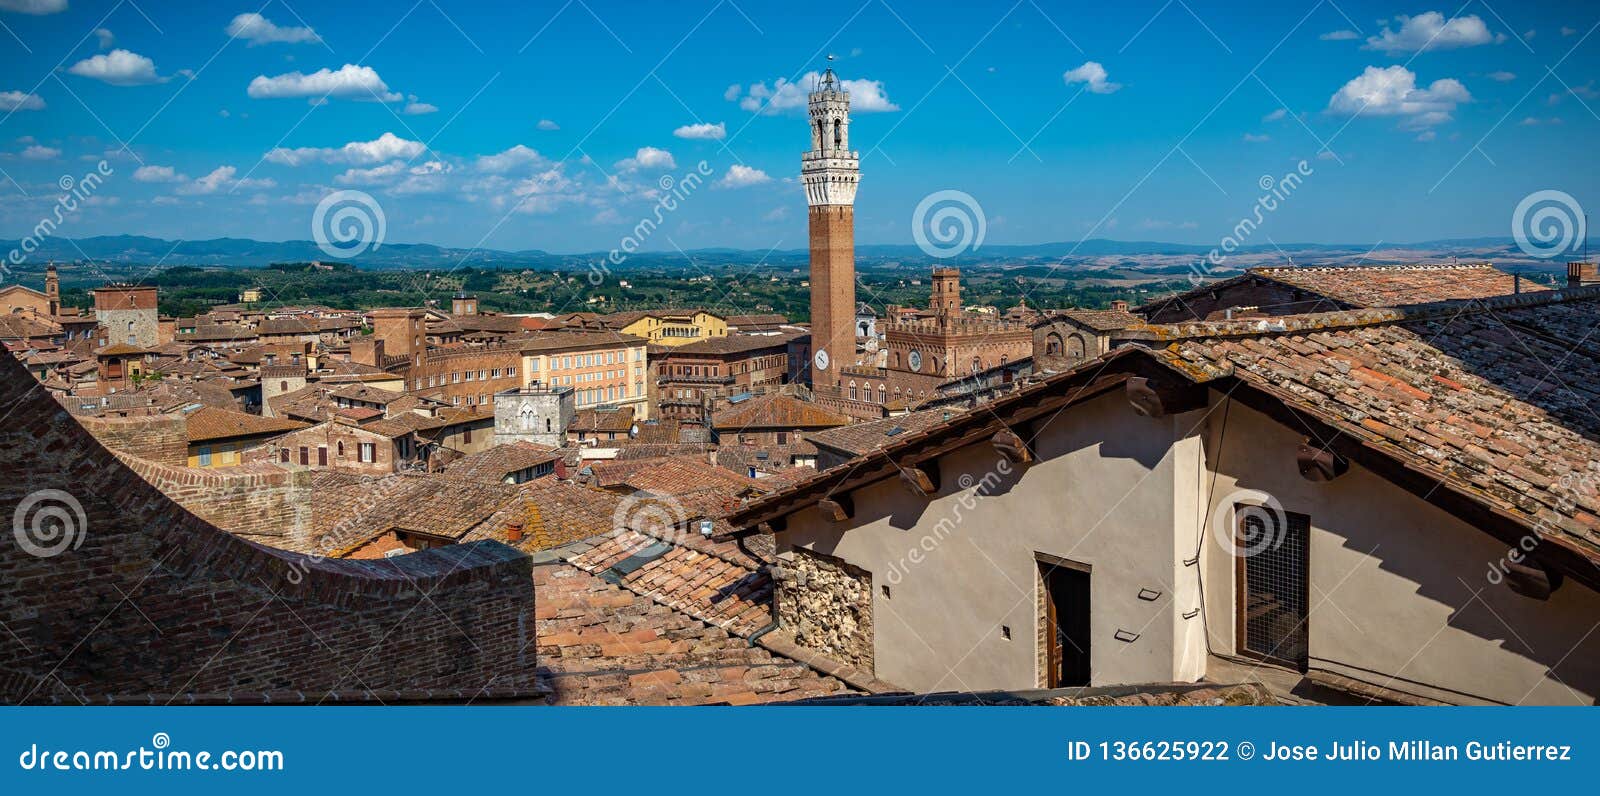 sight of siena italia`s city